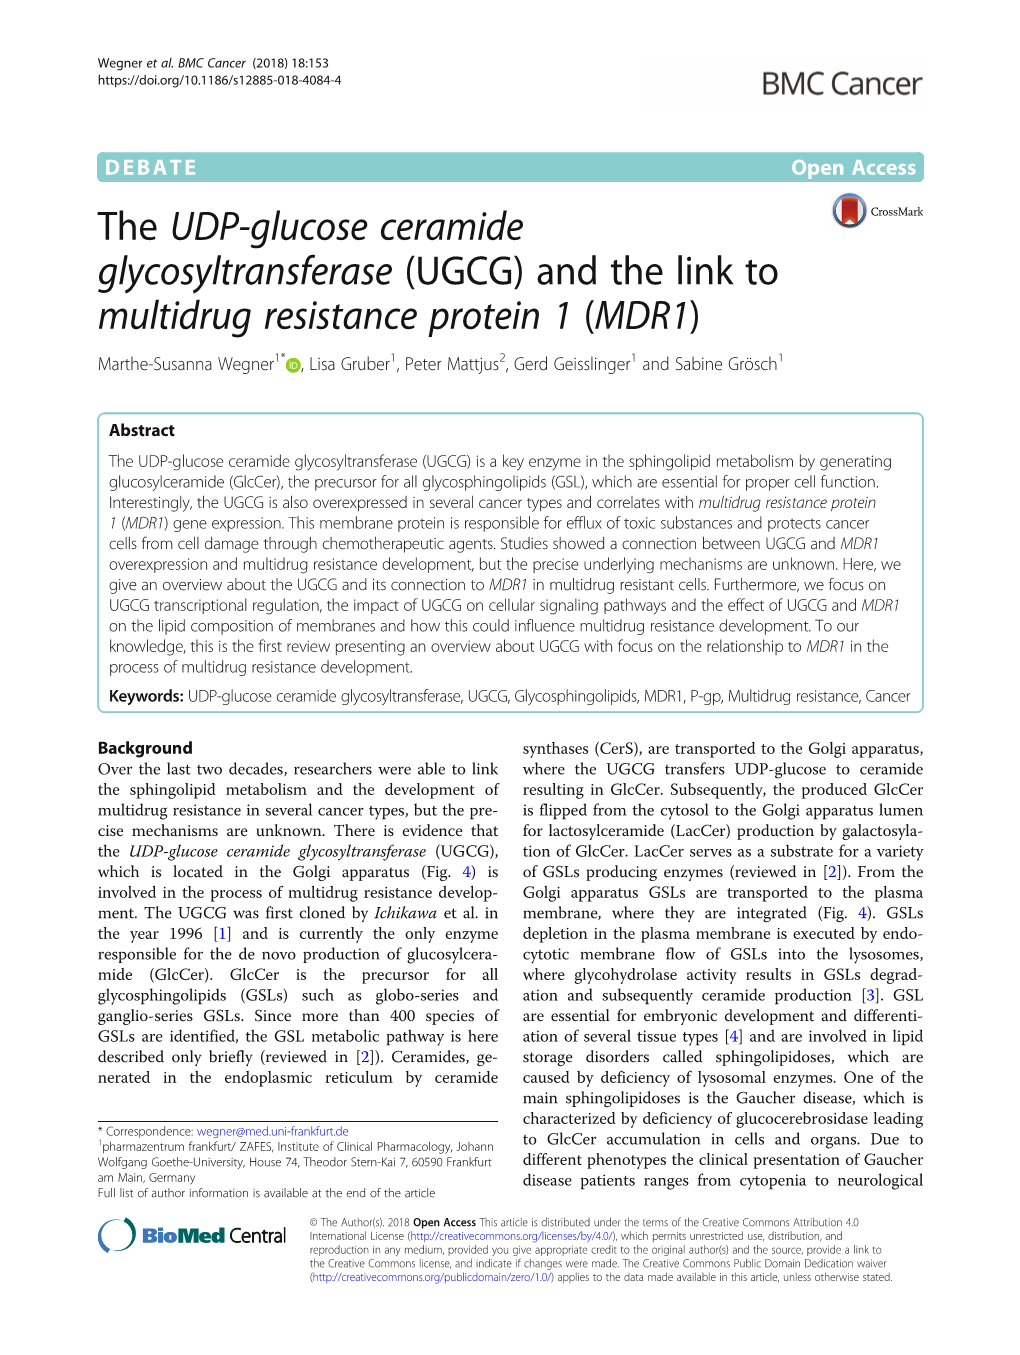 The UDP-Glucose Ceramide Glycosyltransferase (UGCG) and the Link to Multidrug Resistance Protein 1 (MDR1)